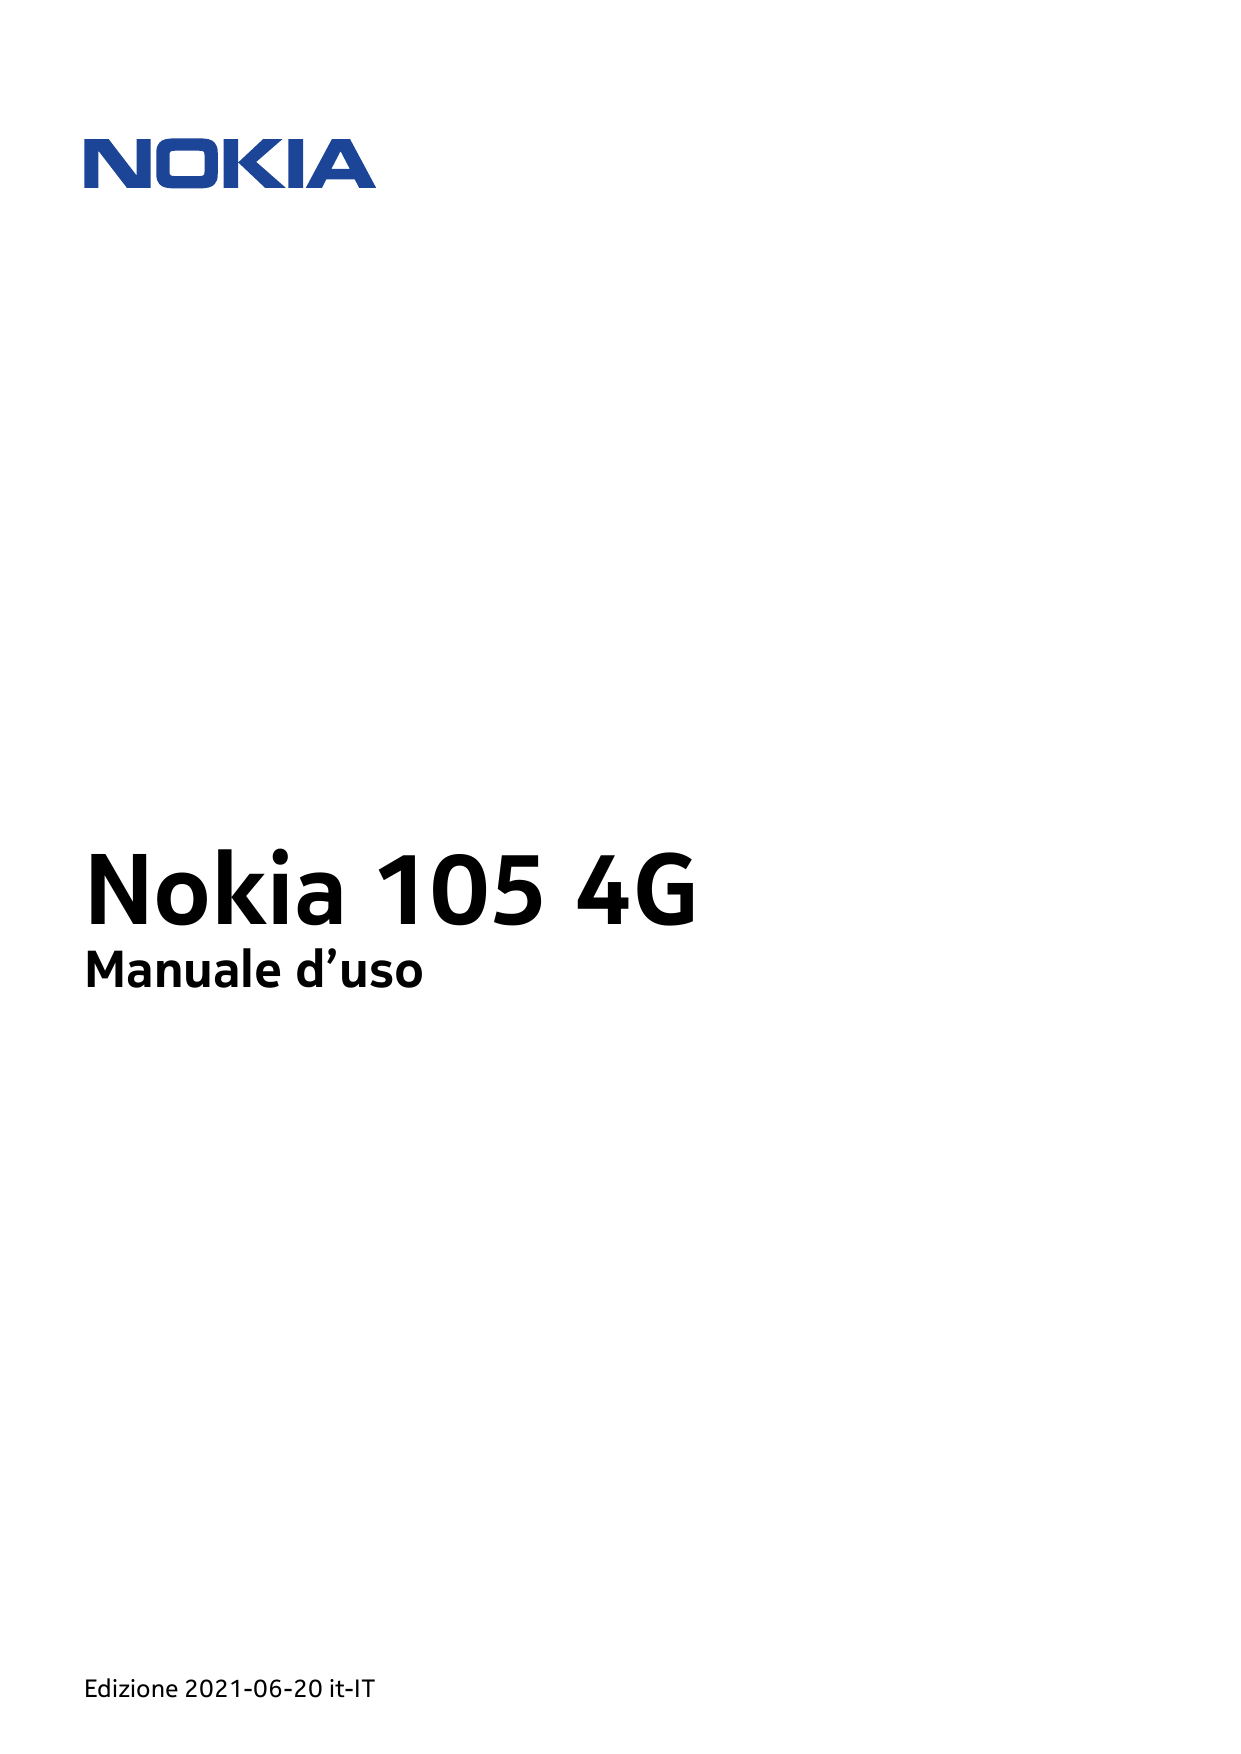 Nokia 105 4GManuale d’usoEdizione 2021-06-20 it-IT